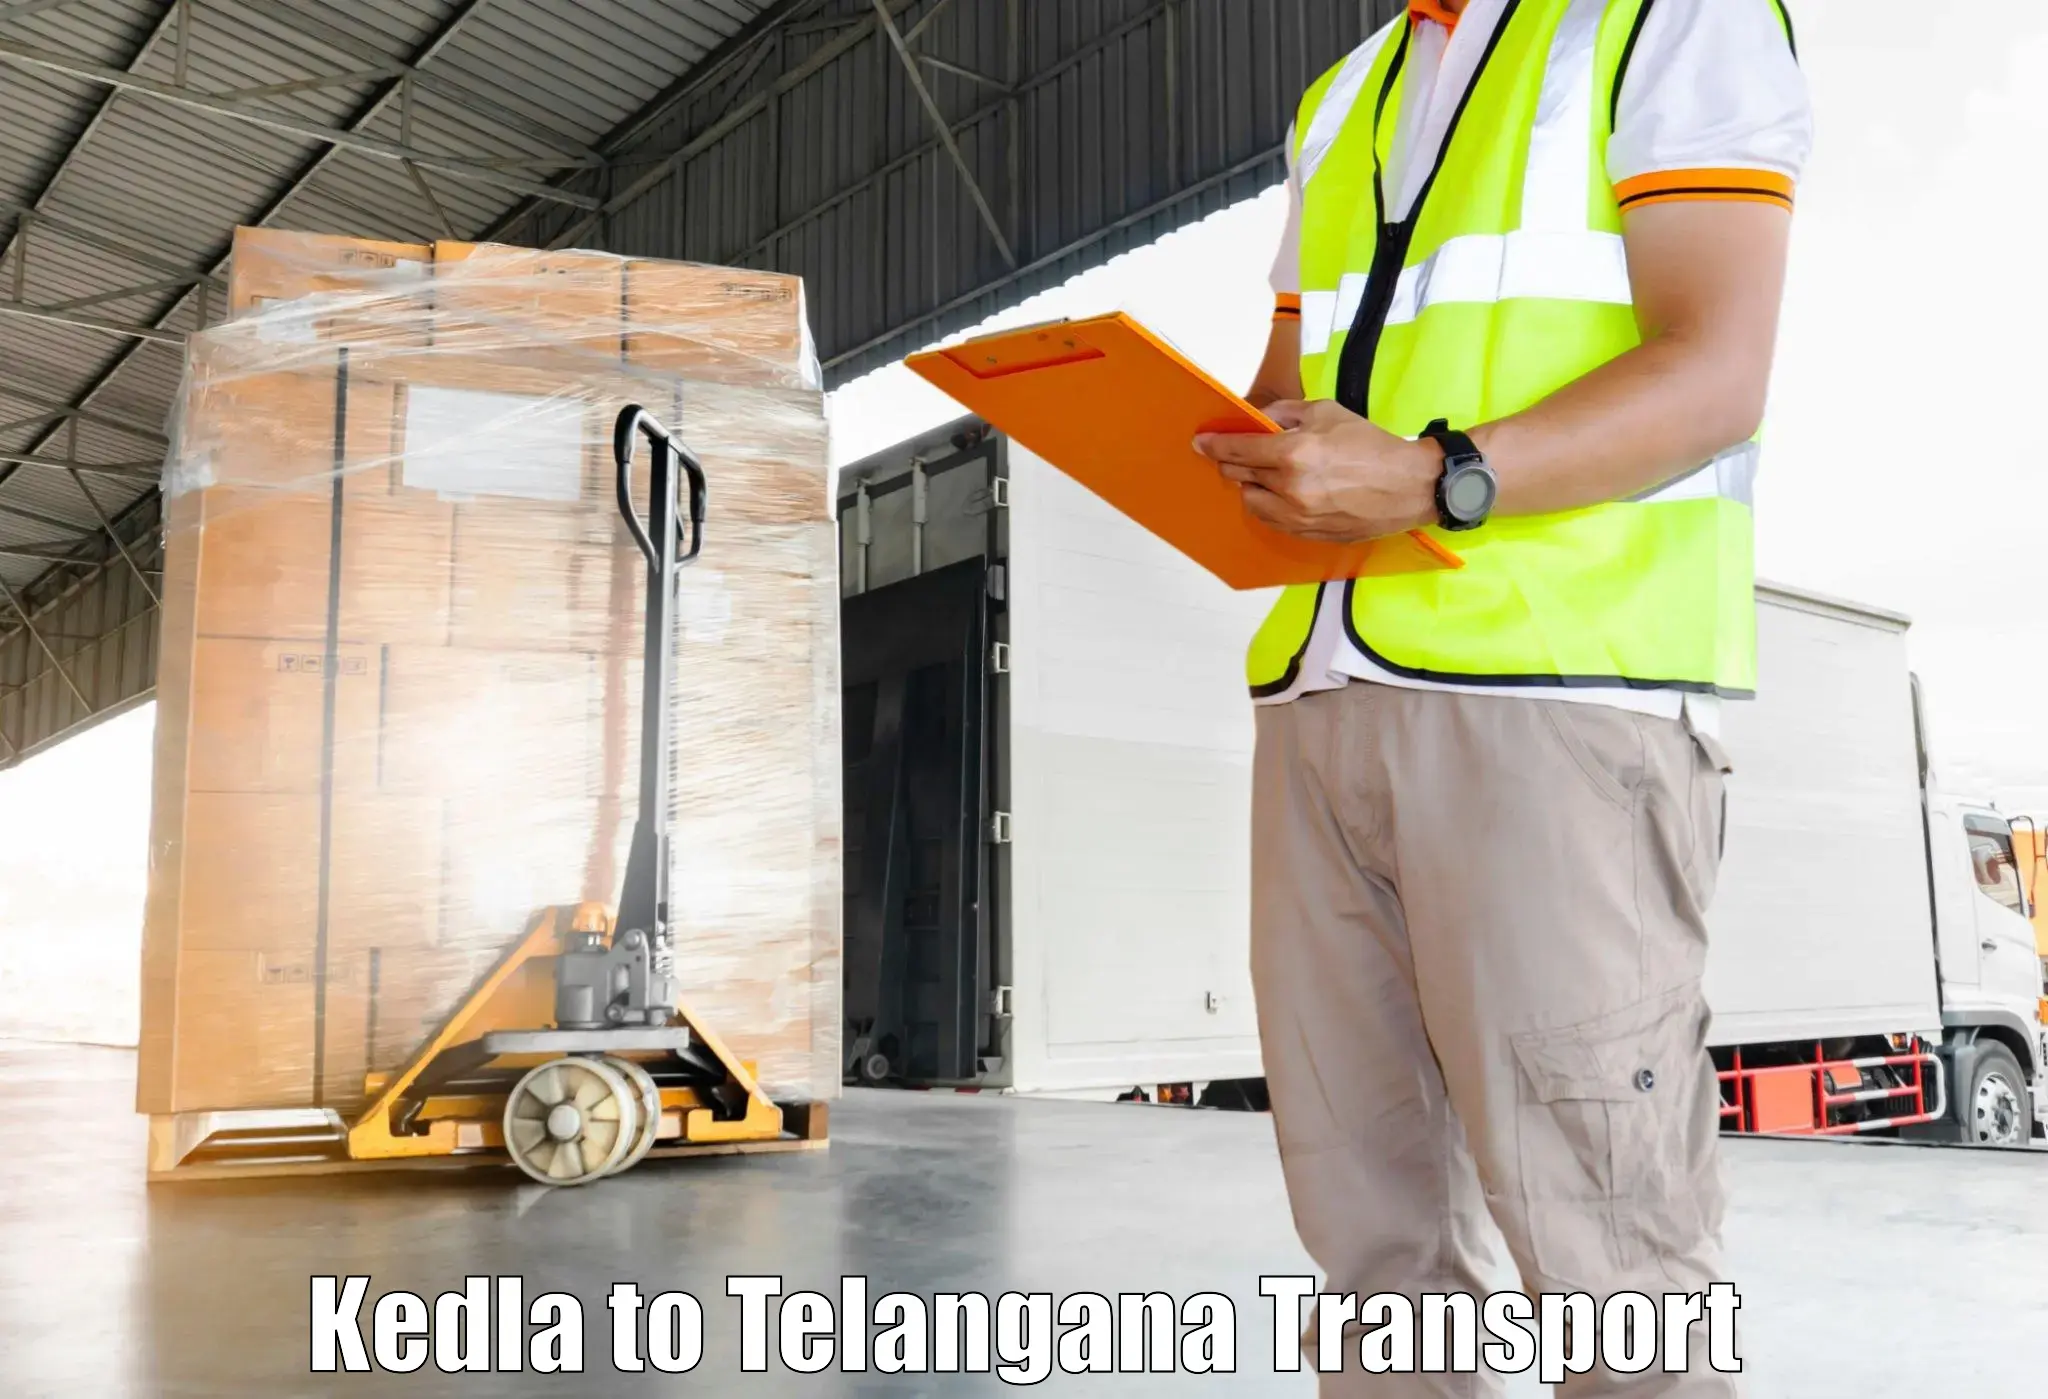 All India transport service Kedla to Atmakur Wanaparthy